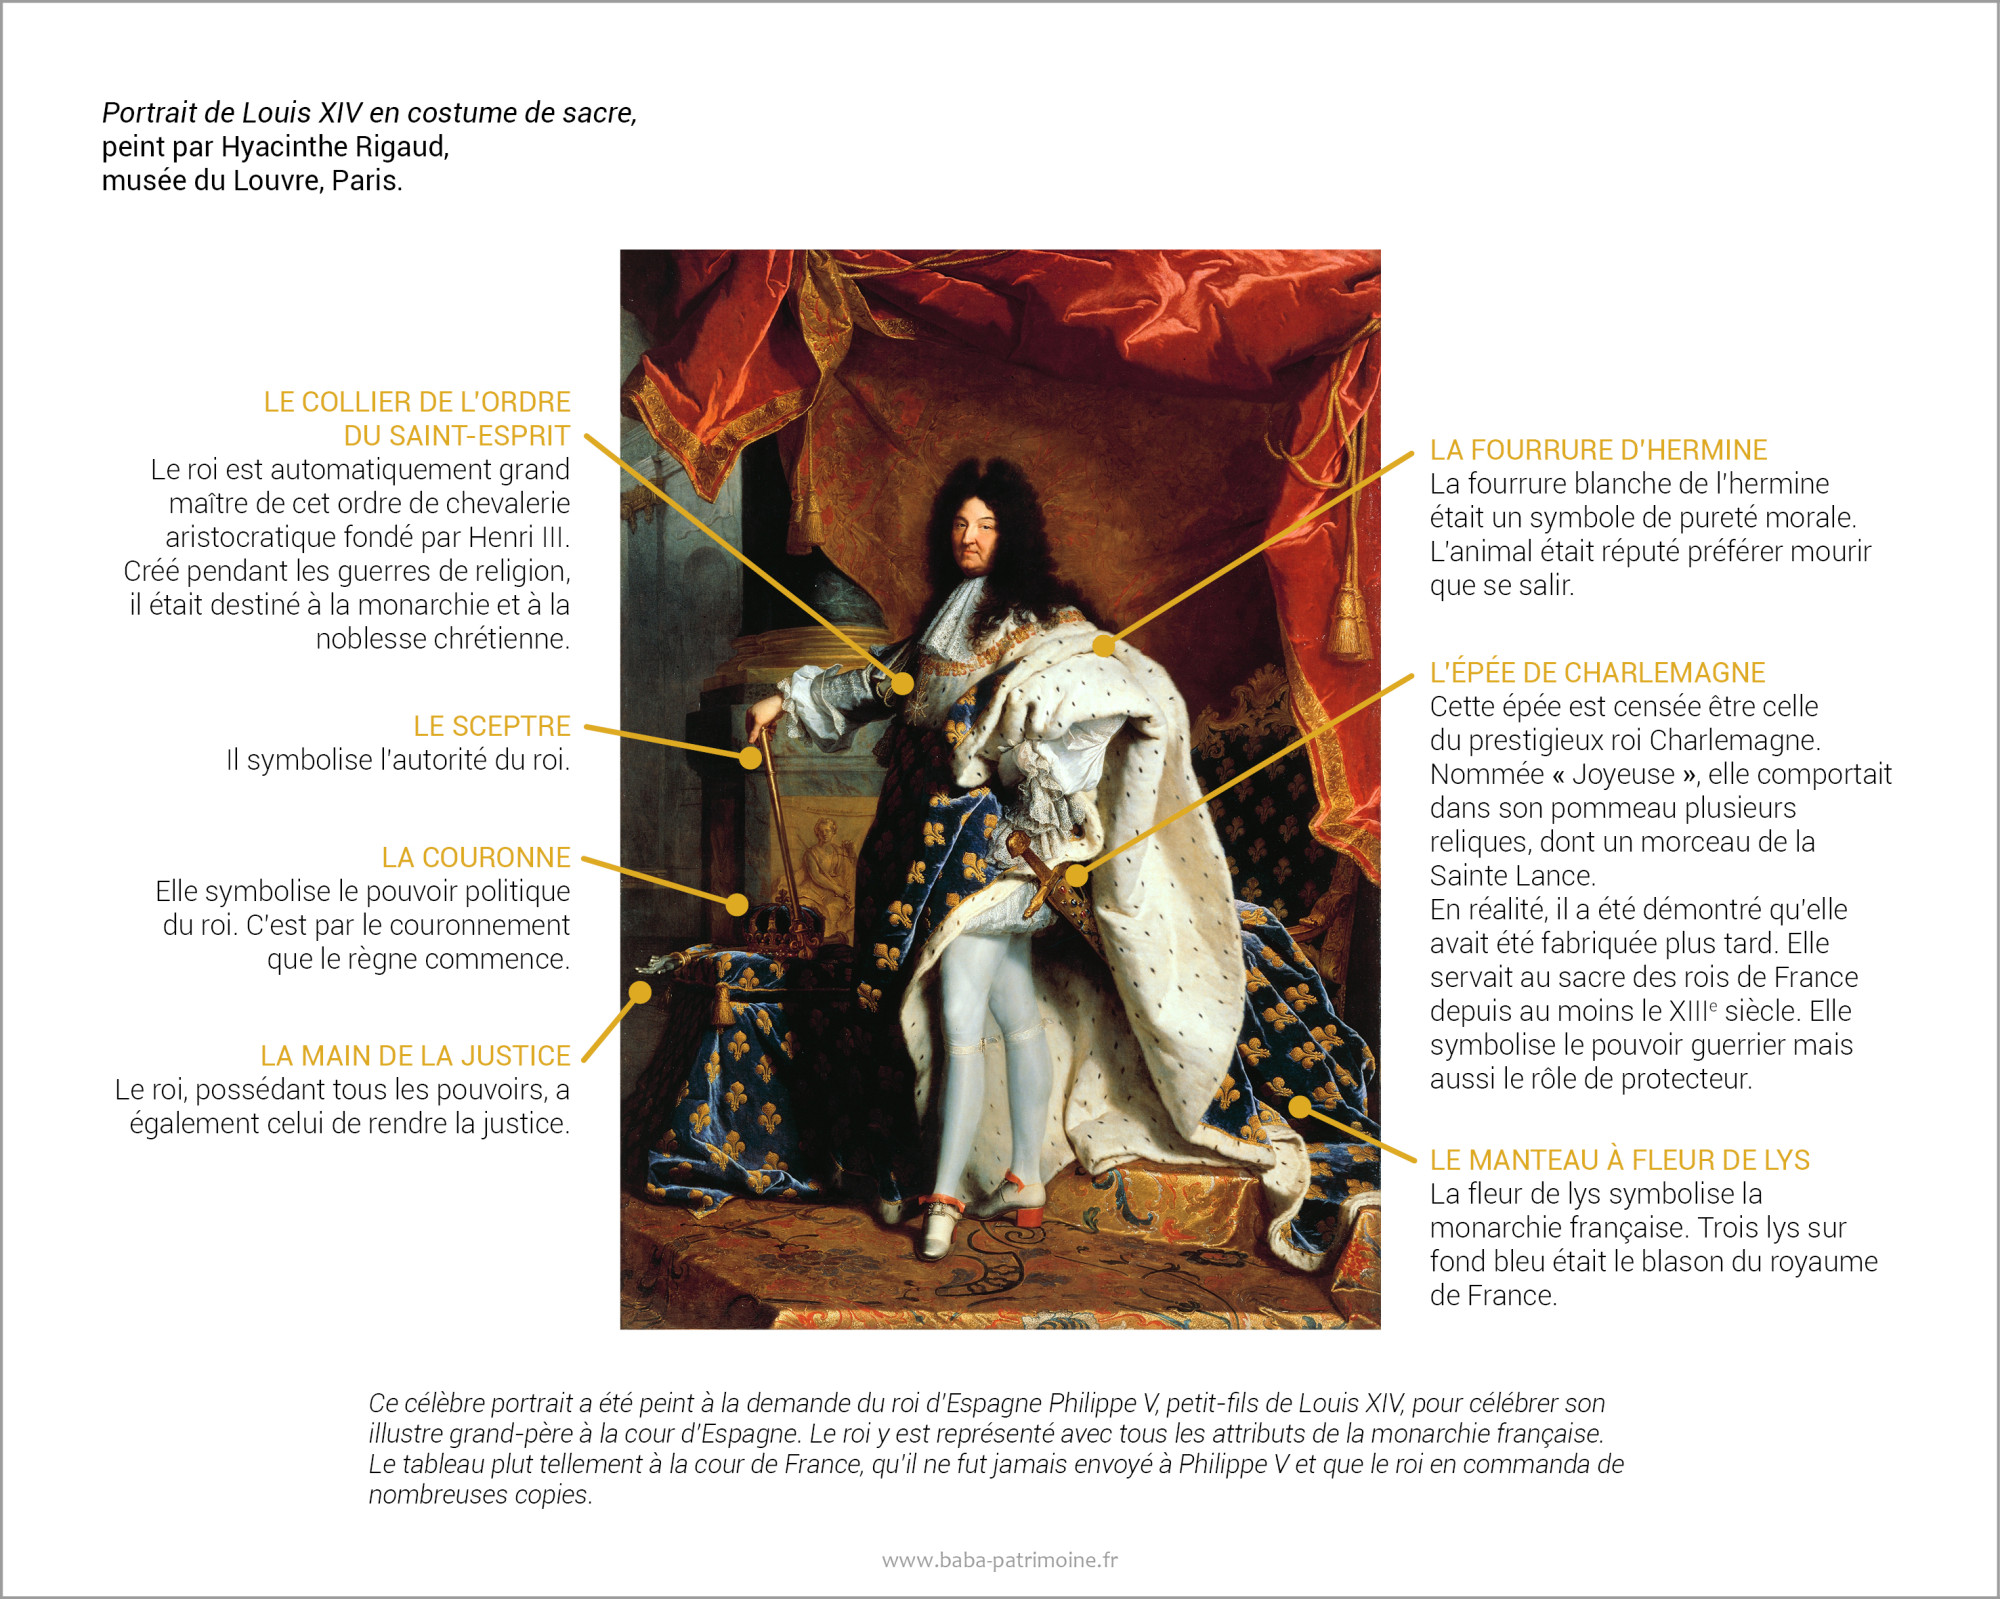 Portrait de Louis XIV en costume de sacre, de Hyacinthe Rigaud - Le b.a ...